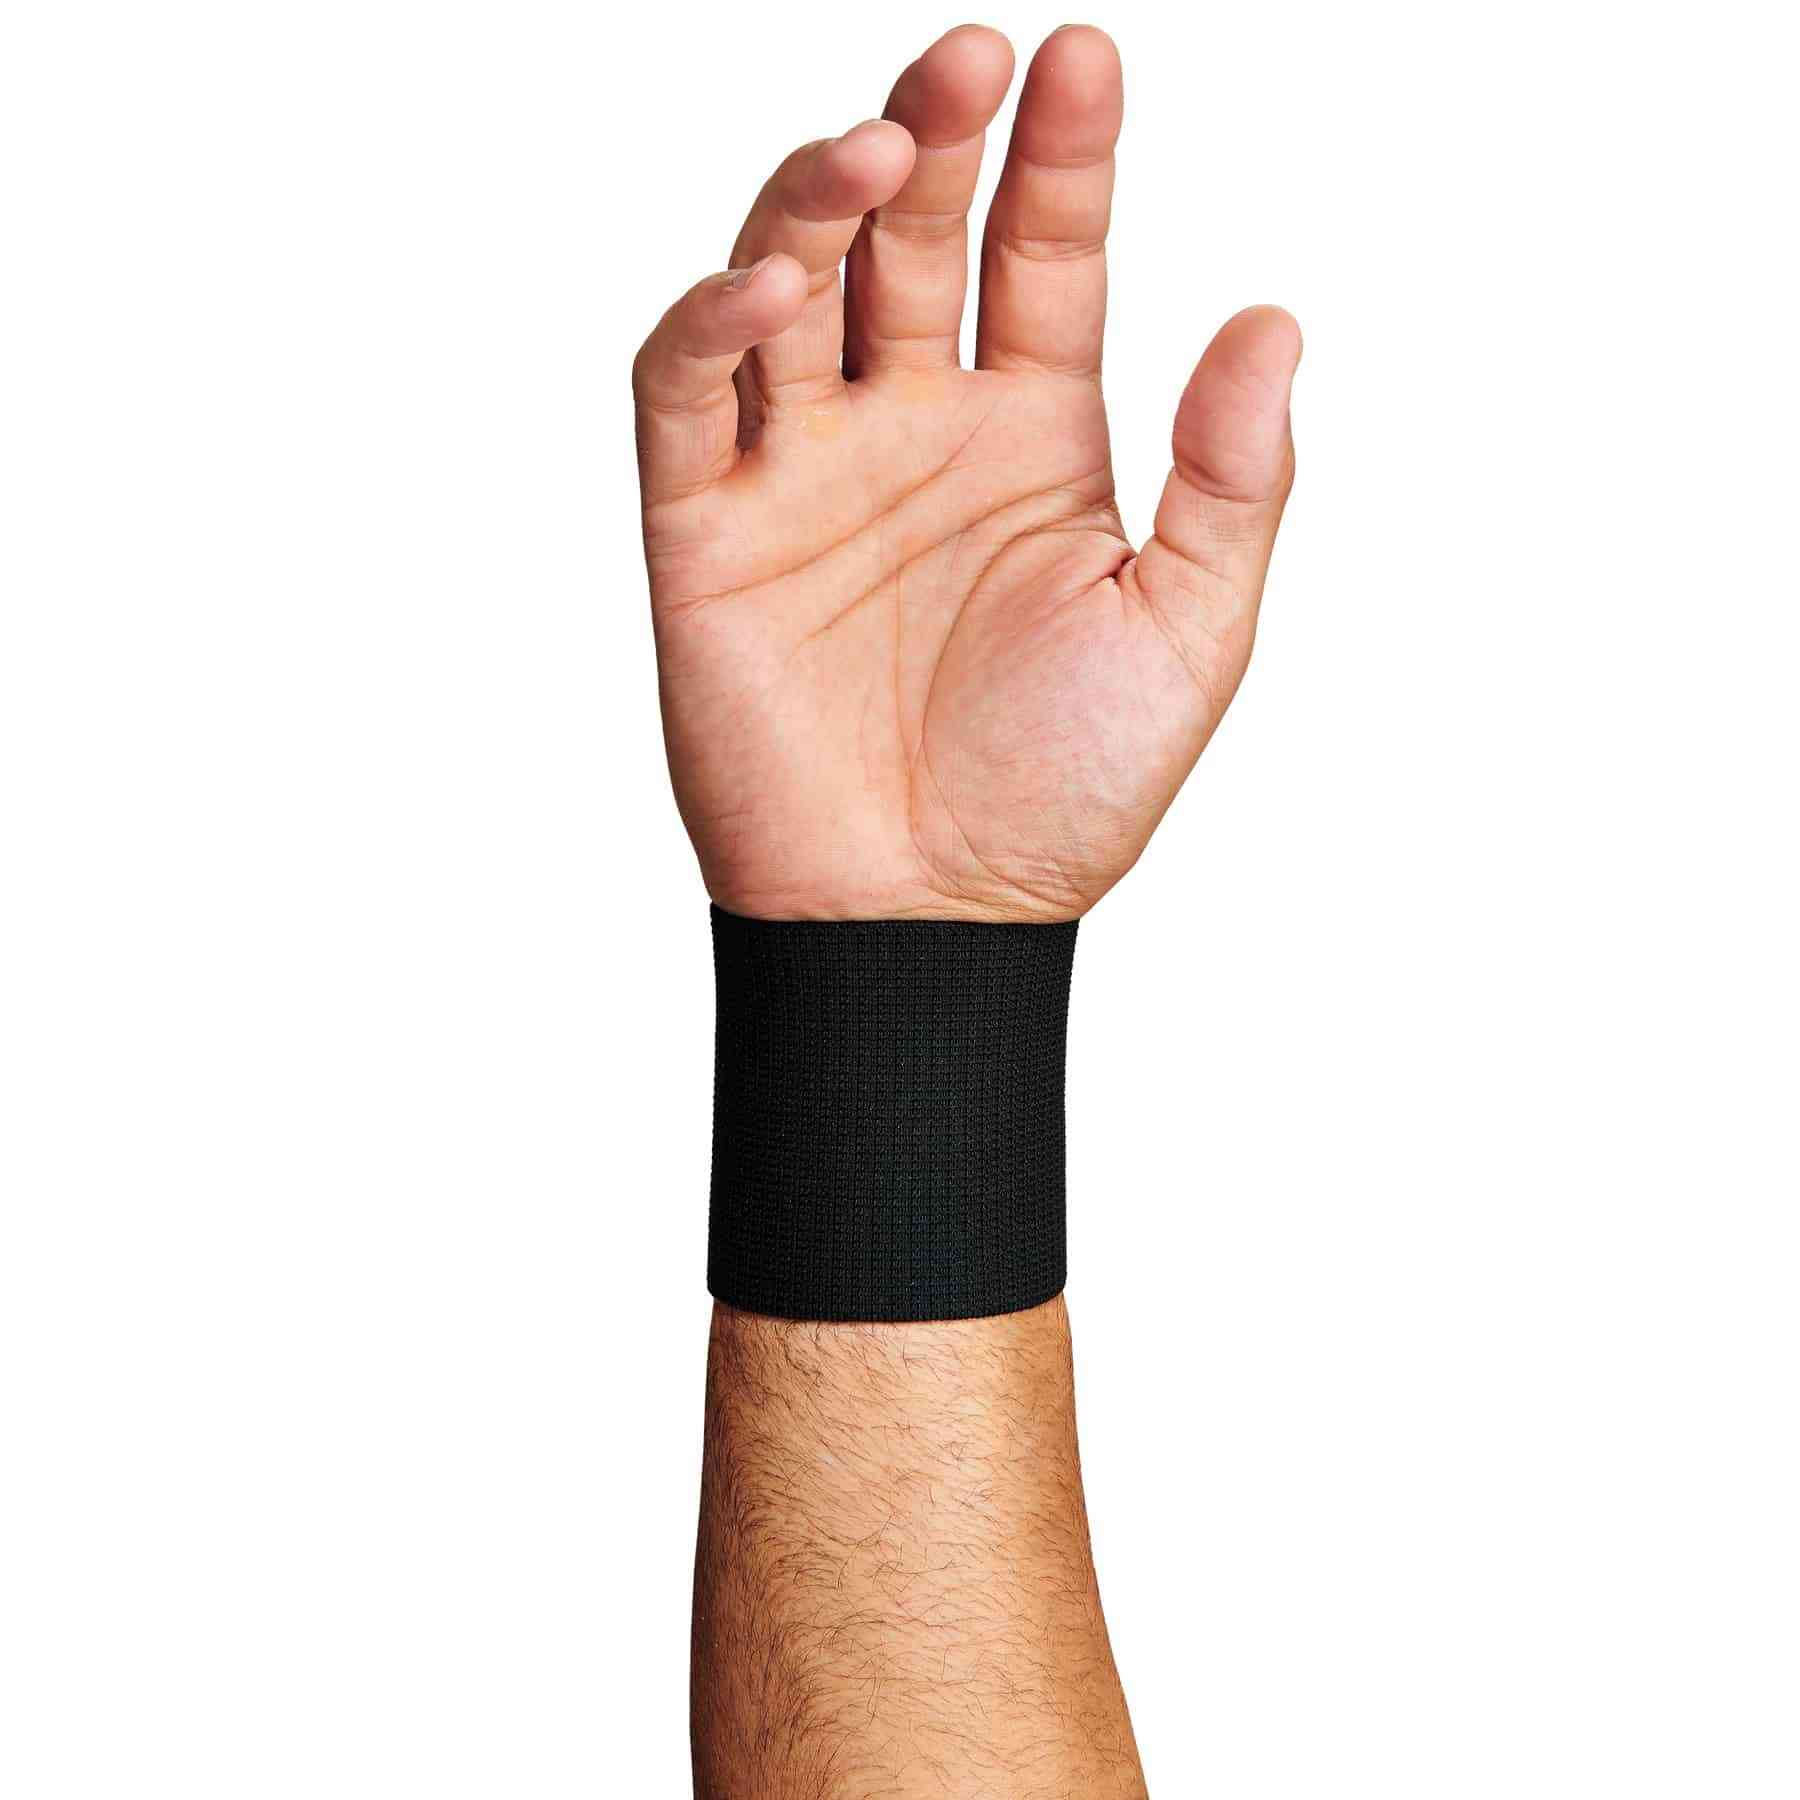 Universal Wrist Wrap - Wrist Supports